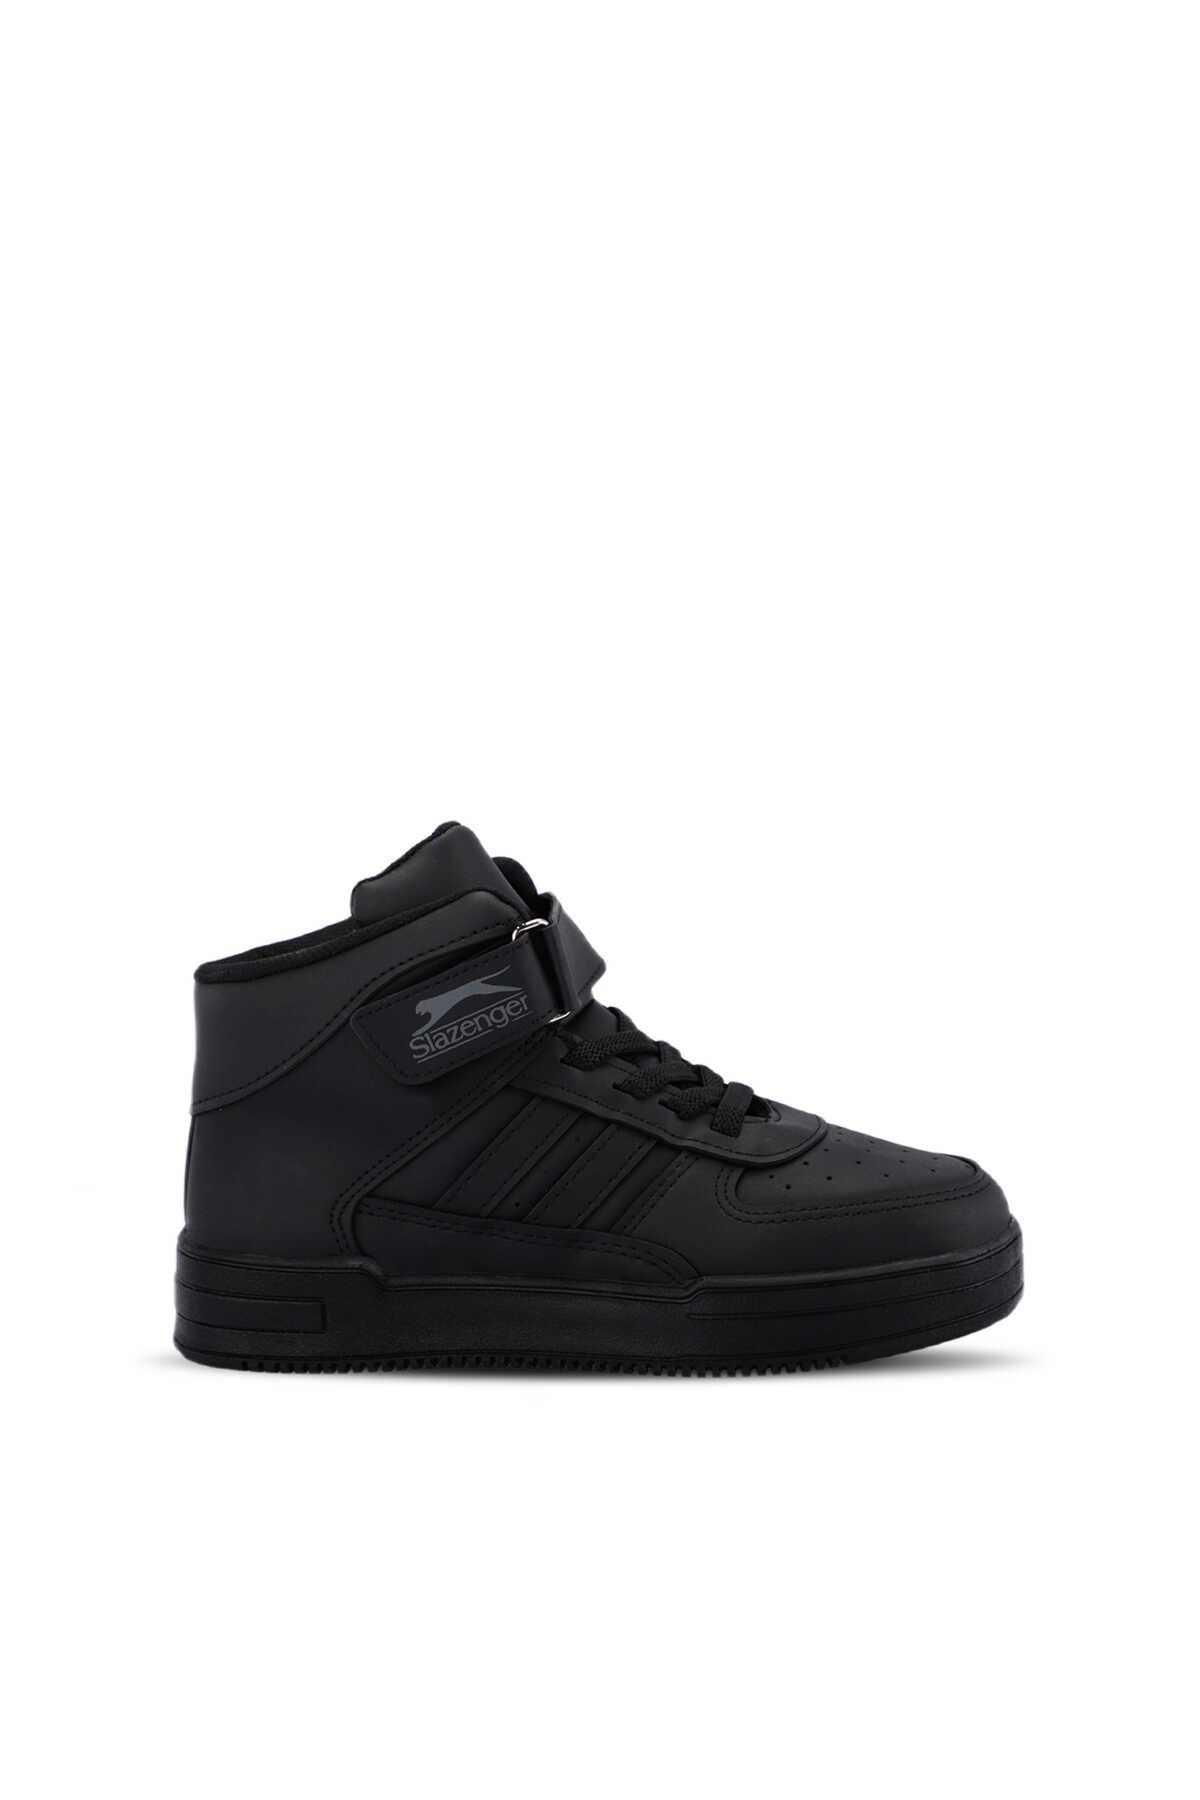 Slazenger - NICOLA I Sneaker Erkek Çocuk Ayakkabı Siyah / Siyah